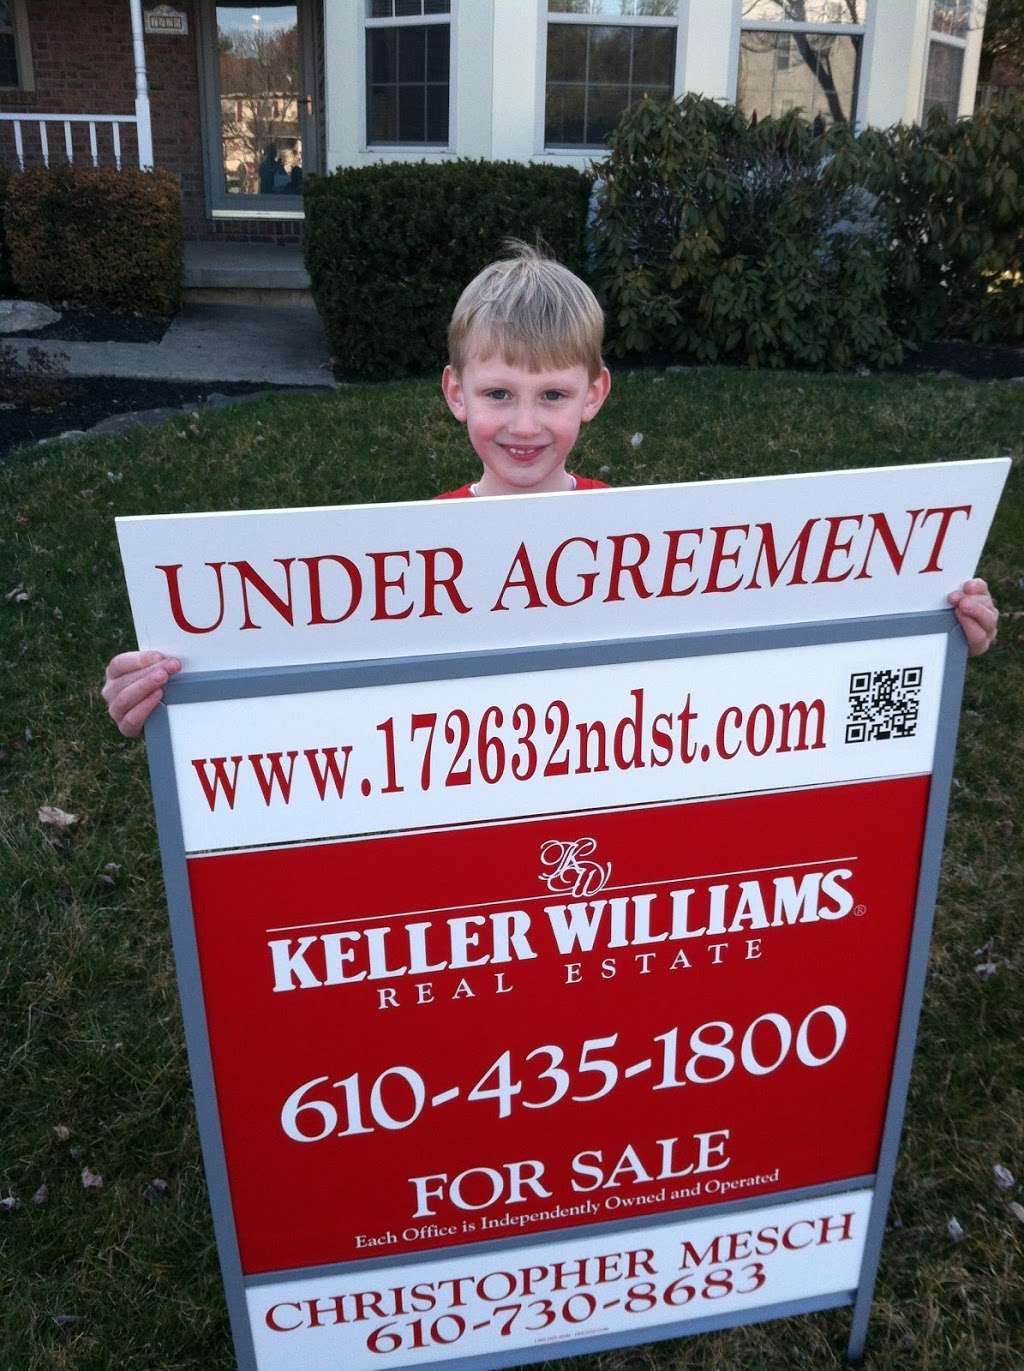 Christopher Mesch - Keller Williams Real Estate | 40 S Cedar Crest Blvd, Allentown, PA 18104 | Phone: (610) 730-8683